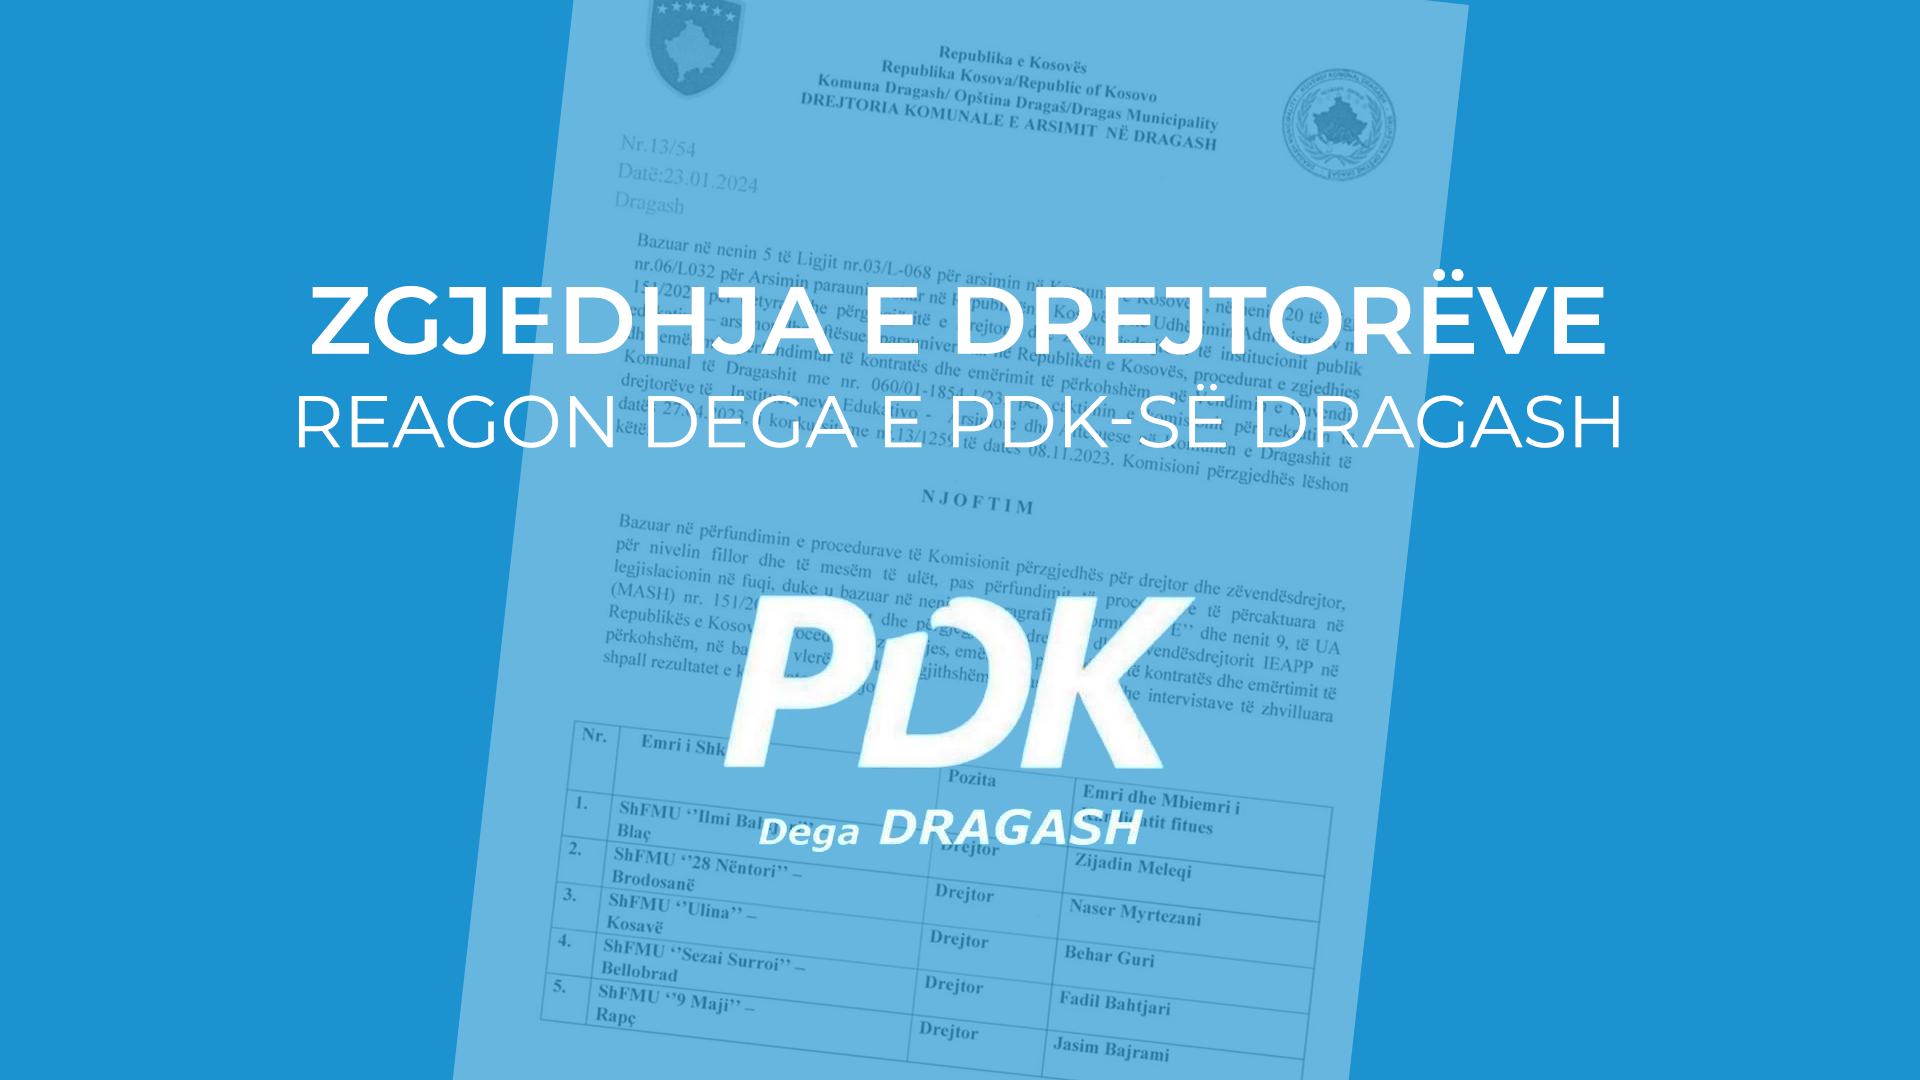 Dega e PDK së në Dragash reagon për zgjedhjen e drejtorëve në SHFMU